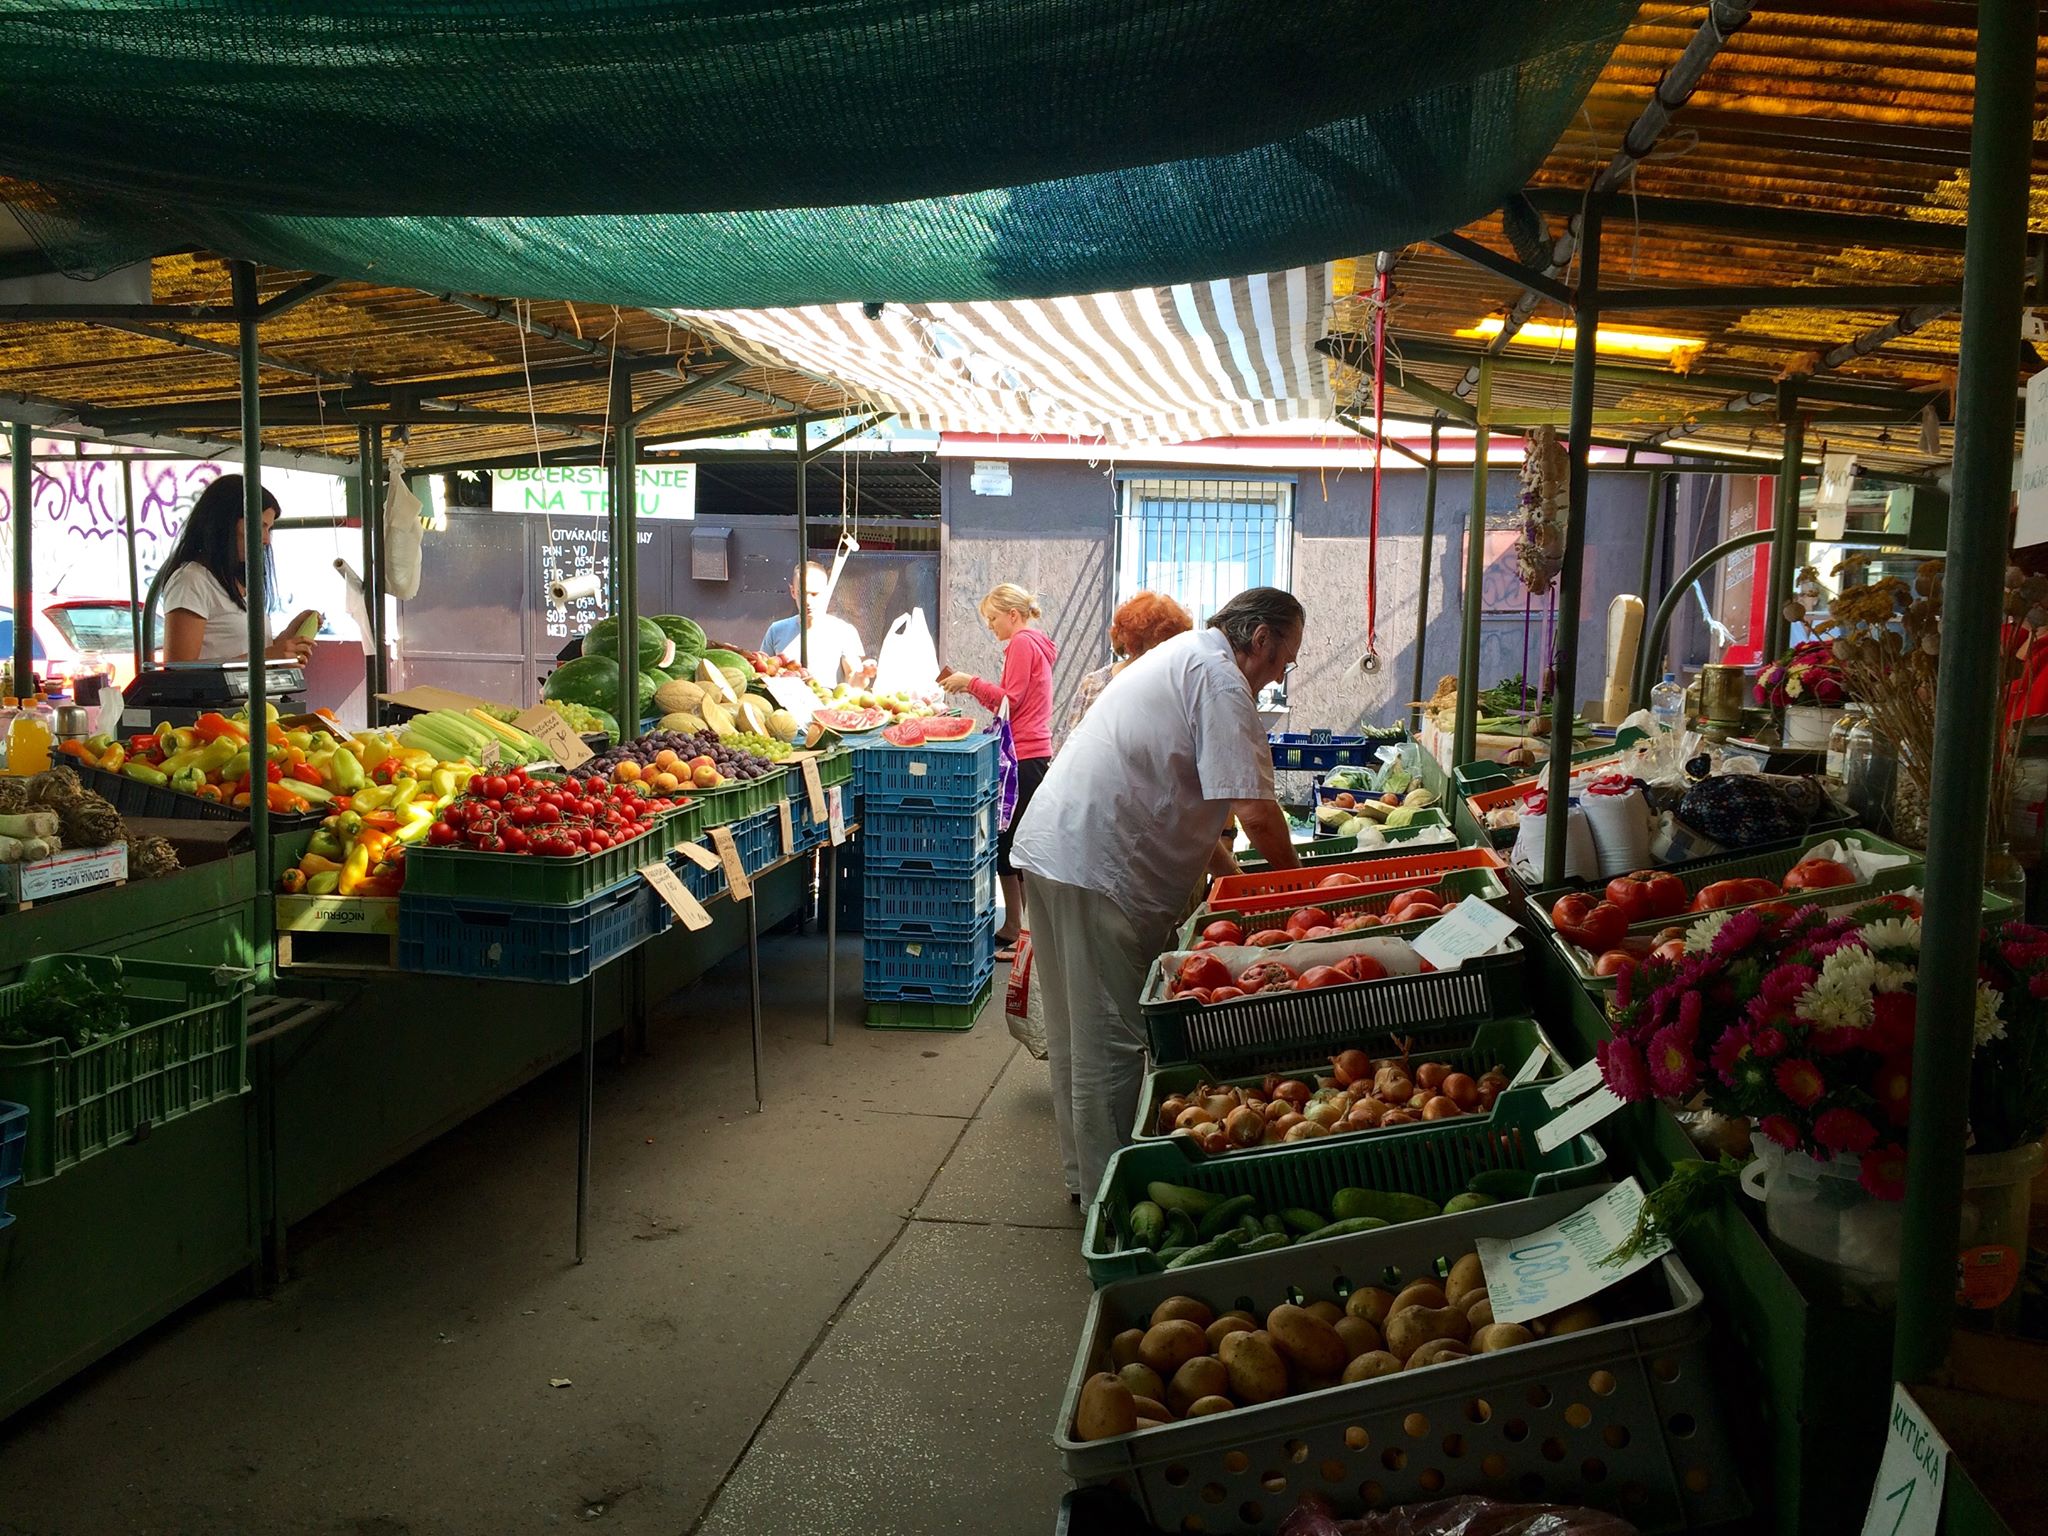 Market place on Zilinska street